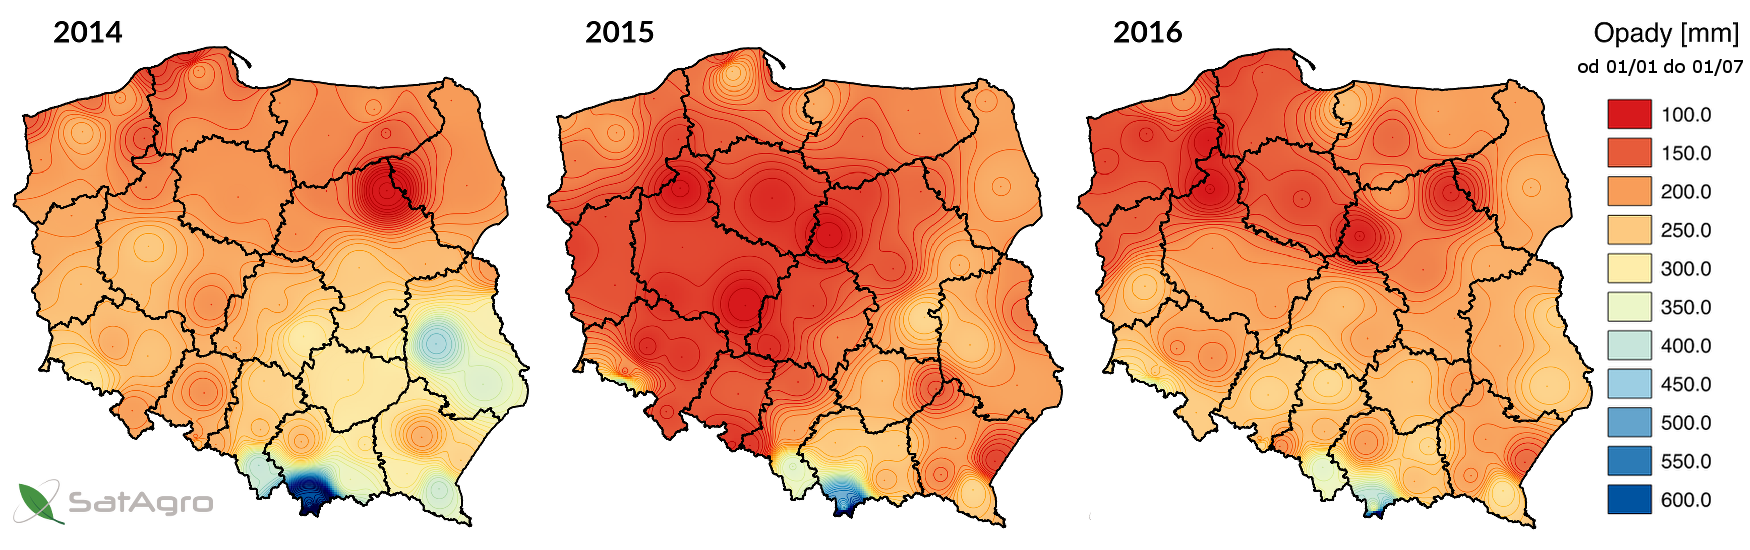 Skumulowane opady dla lat 2014-2016 pomiędzy 1 stycznia i 1 lipca